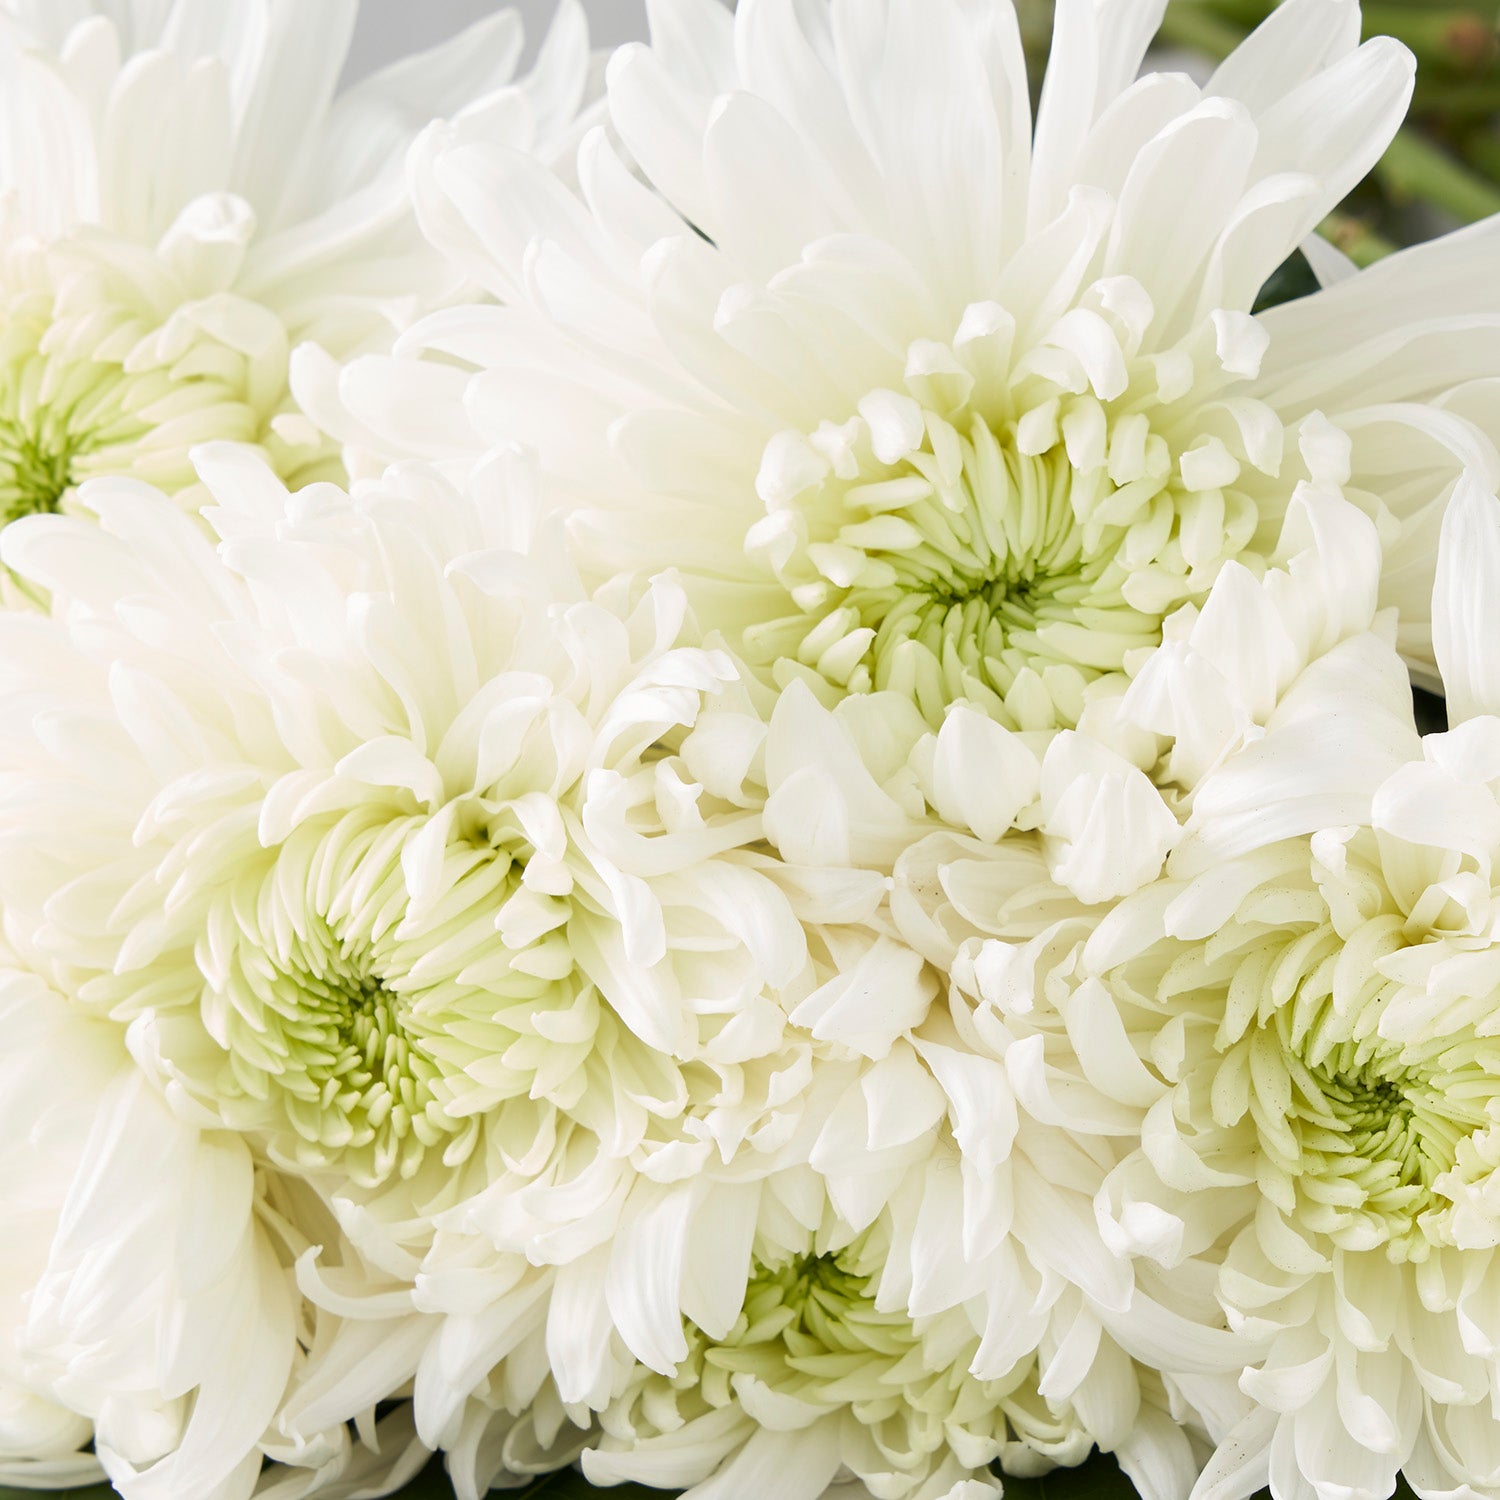 Closeup of white chrysanthemums.